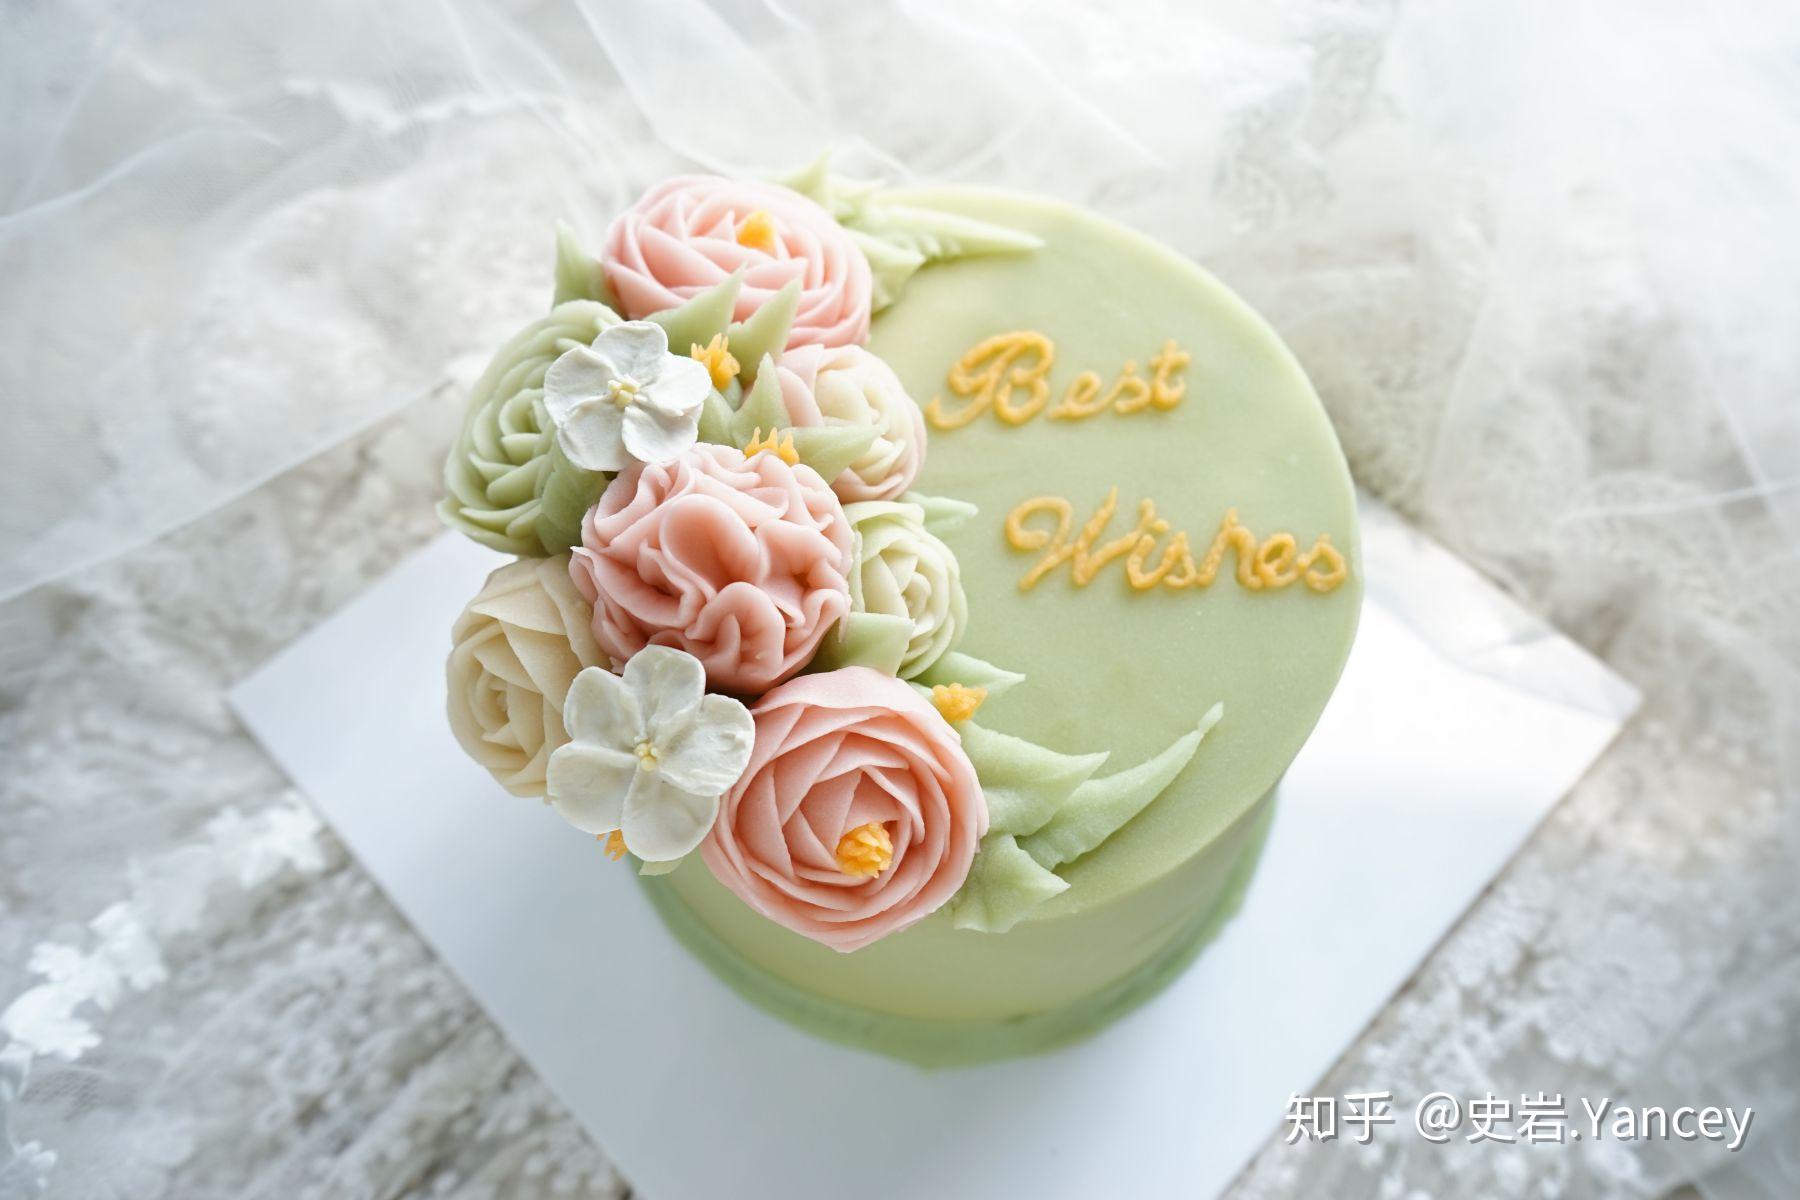 爱厨房的幸福之味: 韩式裱花蛋糕~~~初体验 Buttercream Cake